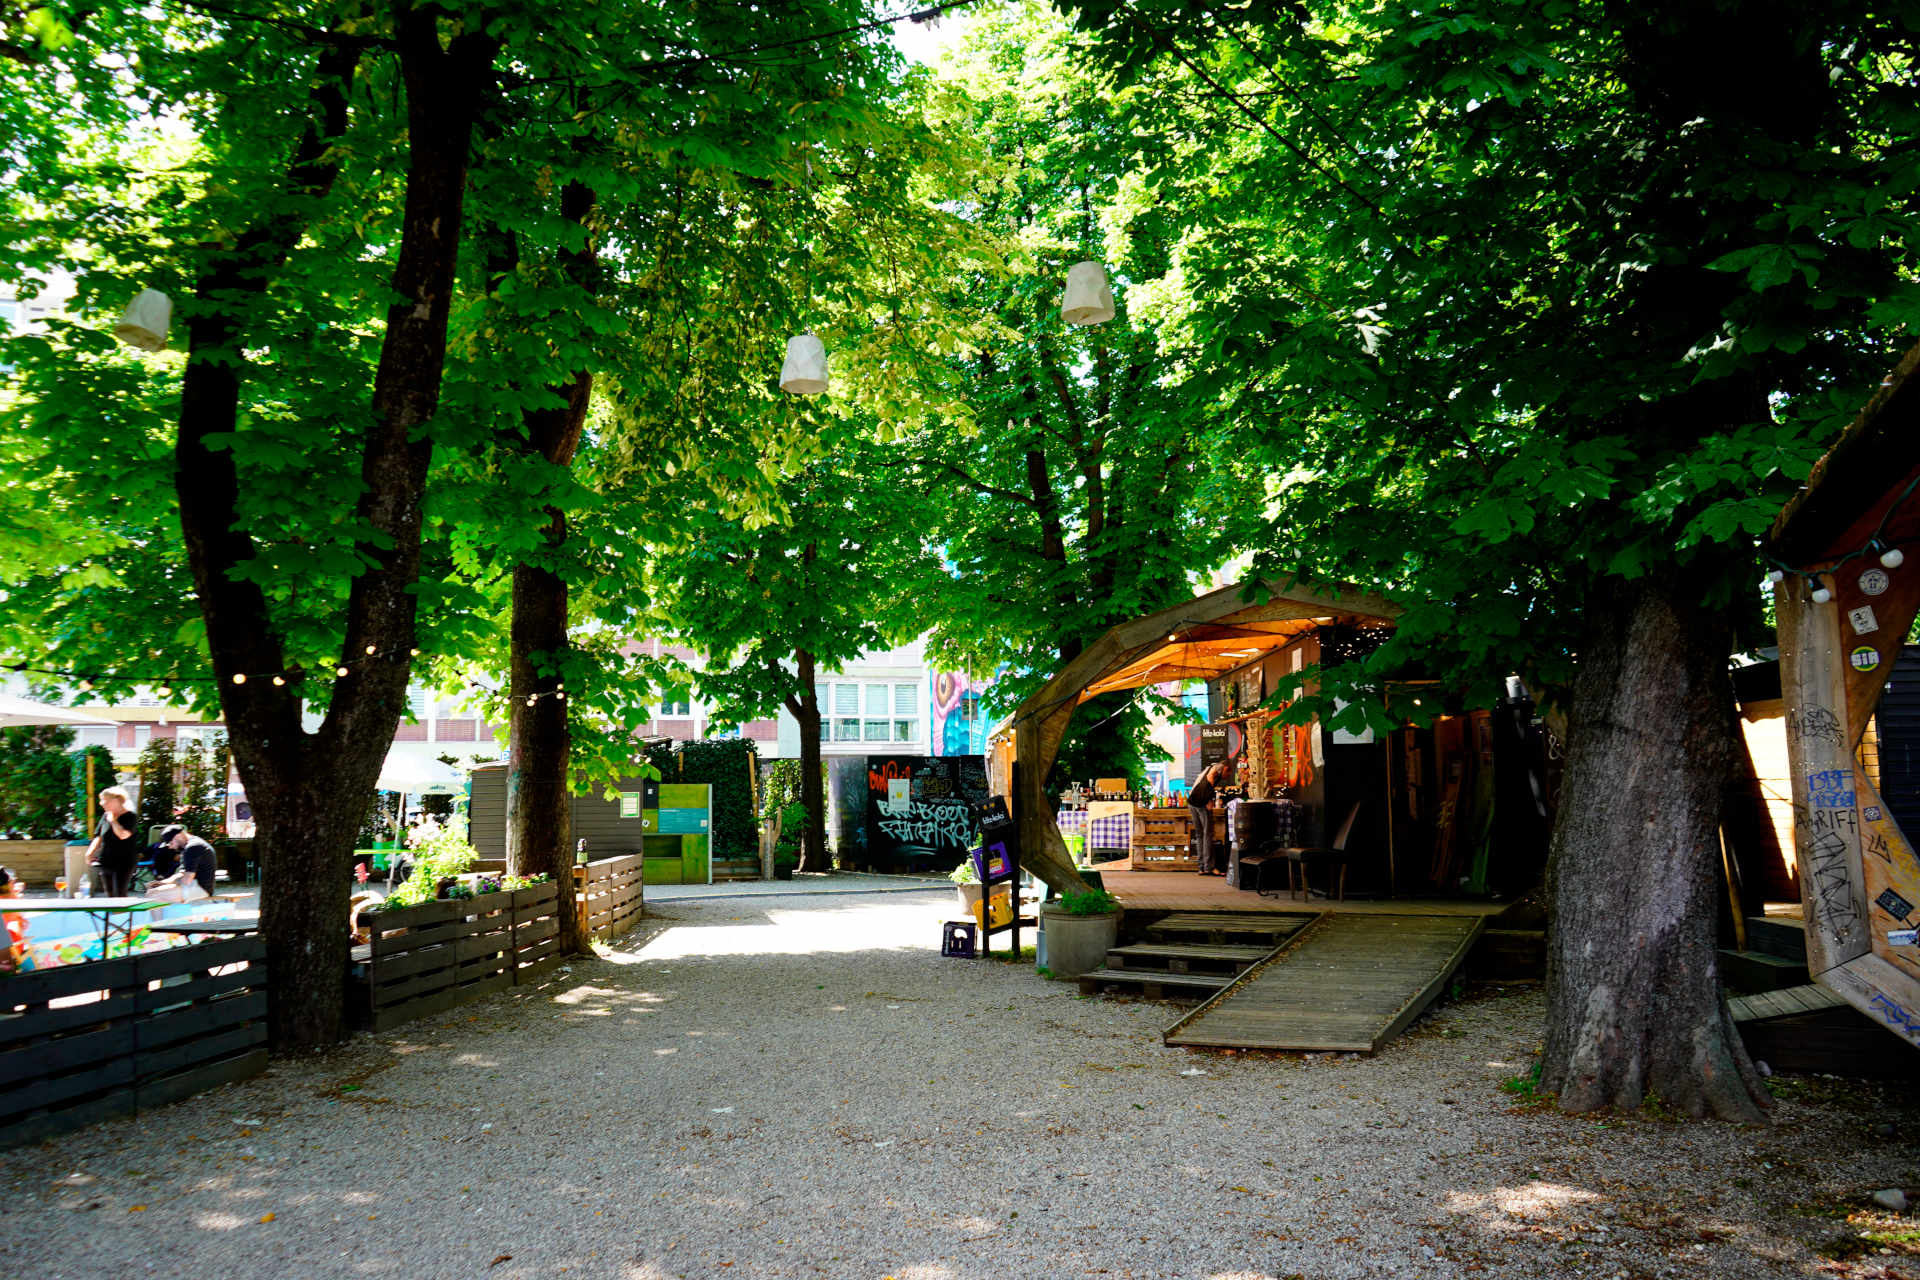 Une place avec de grands marronniers, du gravier en dessous, au fond à droite de l'image un pavillon en bois avec un kiosque.